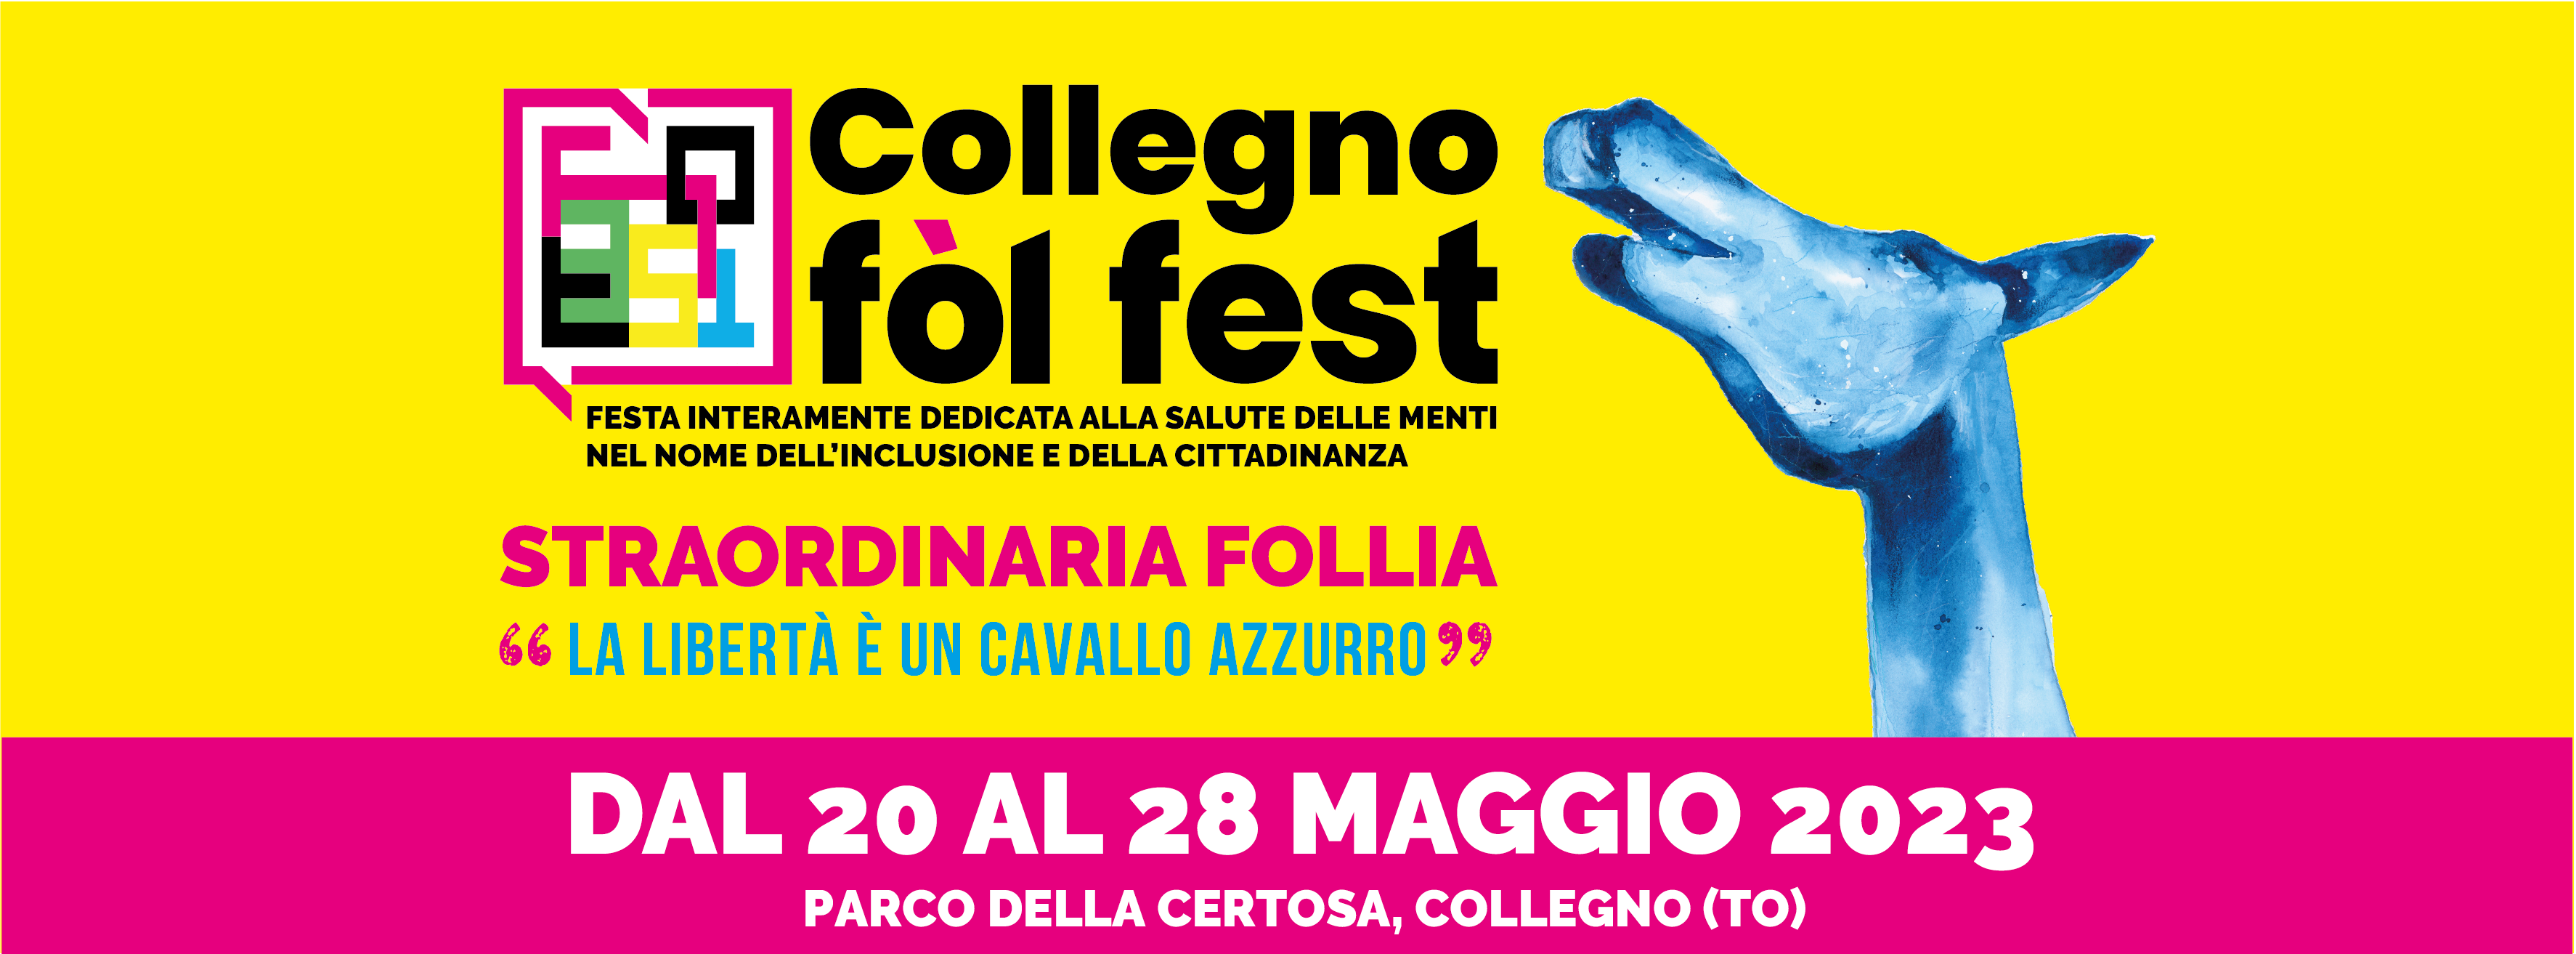 Collegno Fòl Fest - Da sabato 20 a domenica 28 maggio 2023